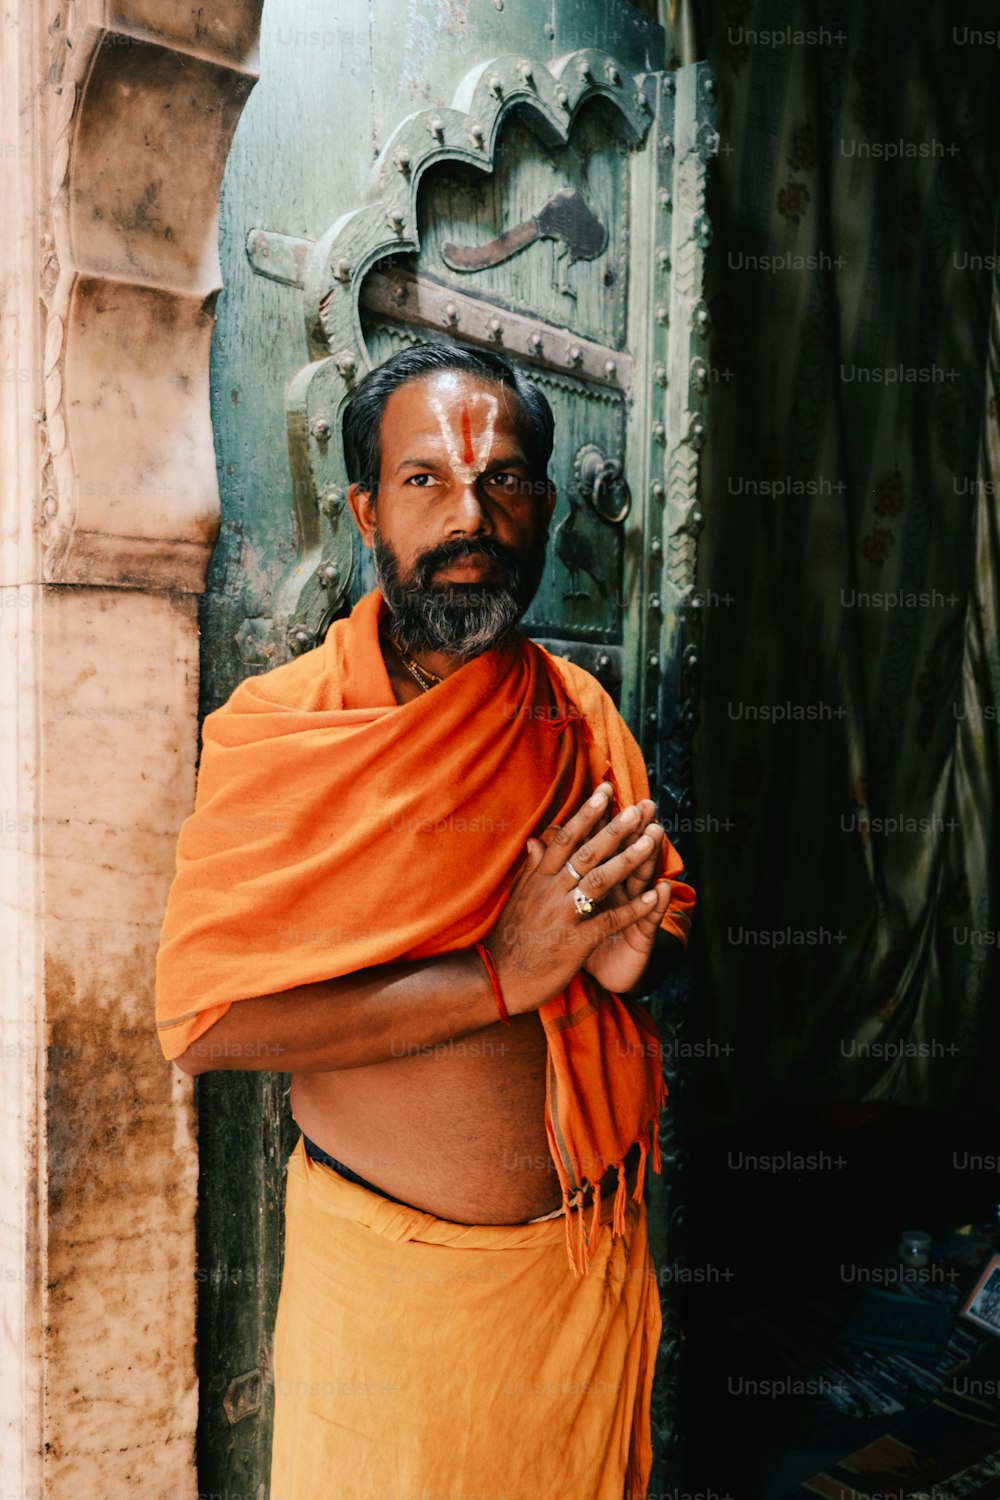 Ein Mann in einem orangefarbenen Outfit, der vor einer Tür steht